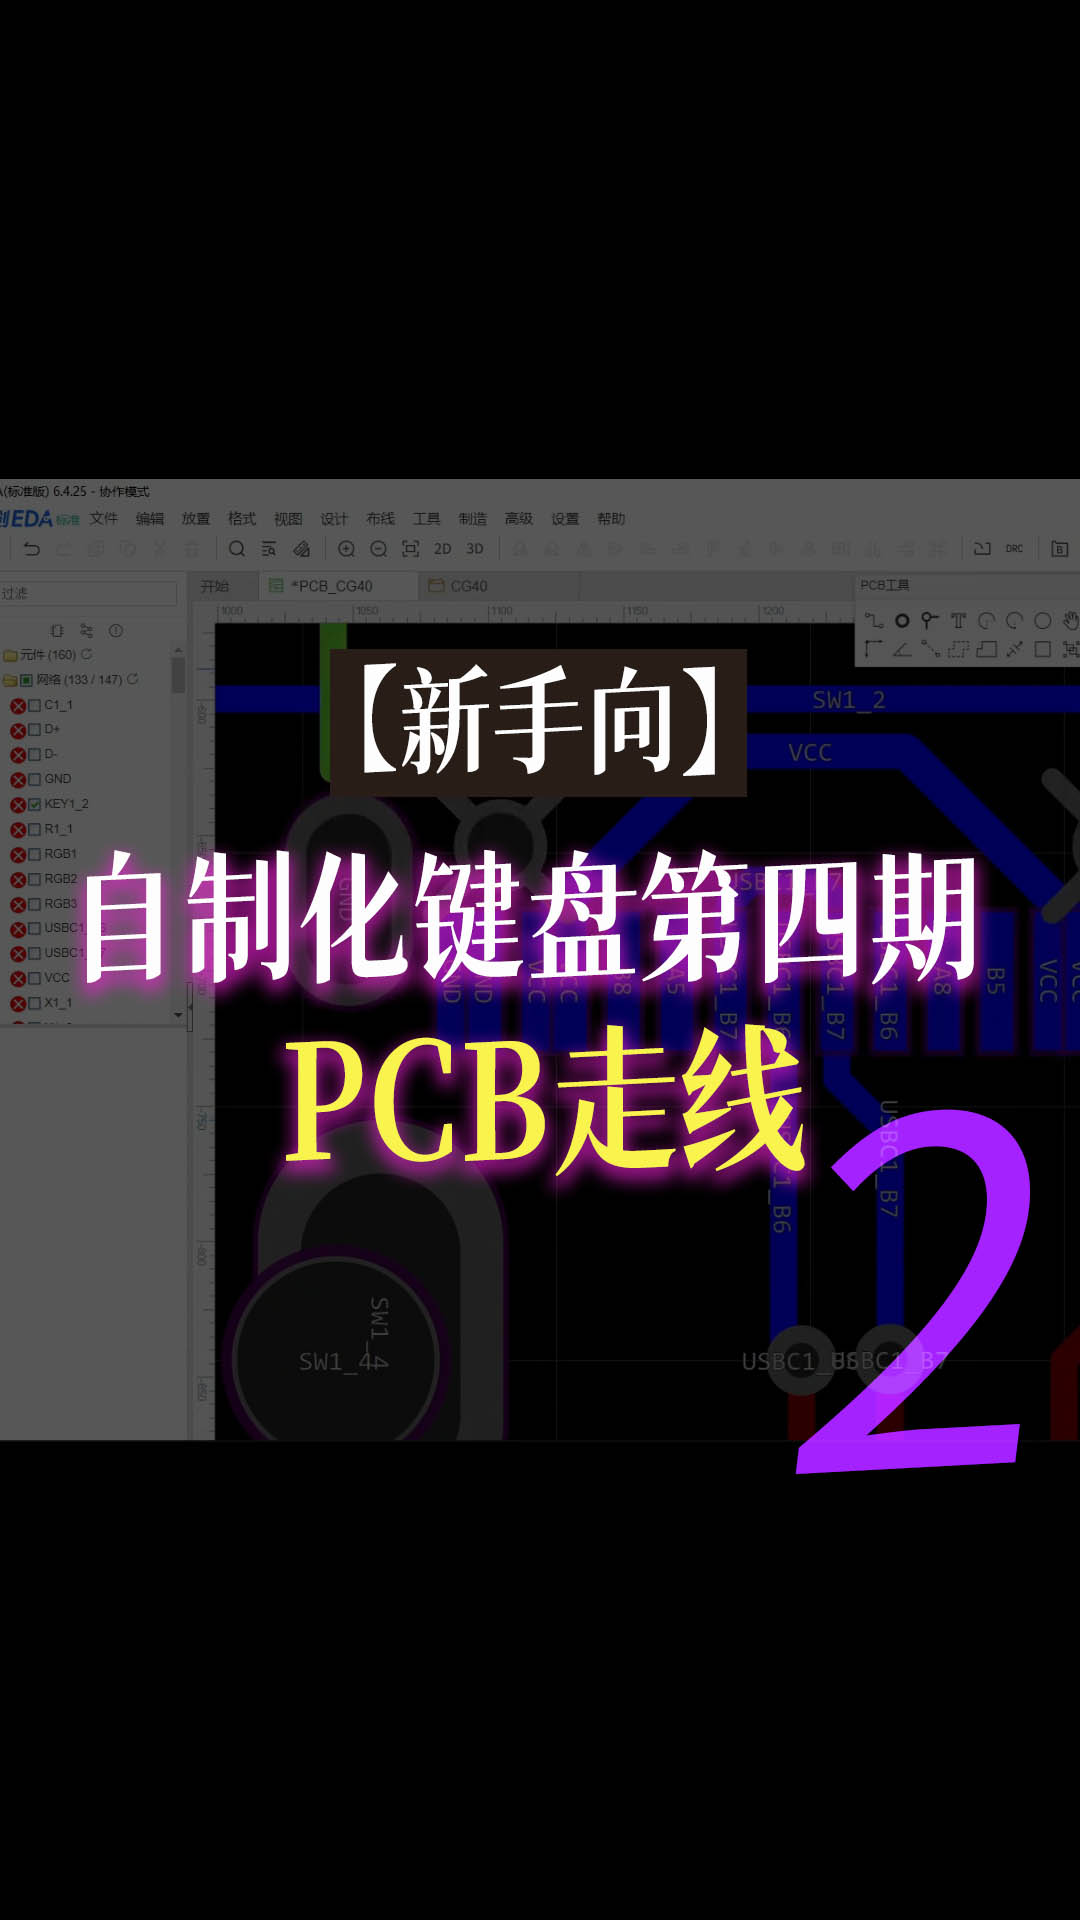 【新手向】自制化键盘第四期—PCB走线2#跟着UP主一起创作吧 #pcb设计 